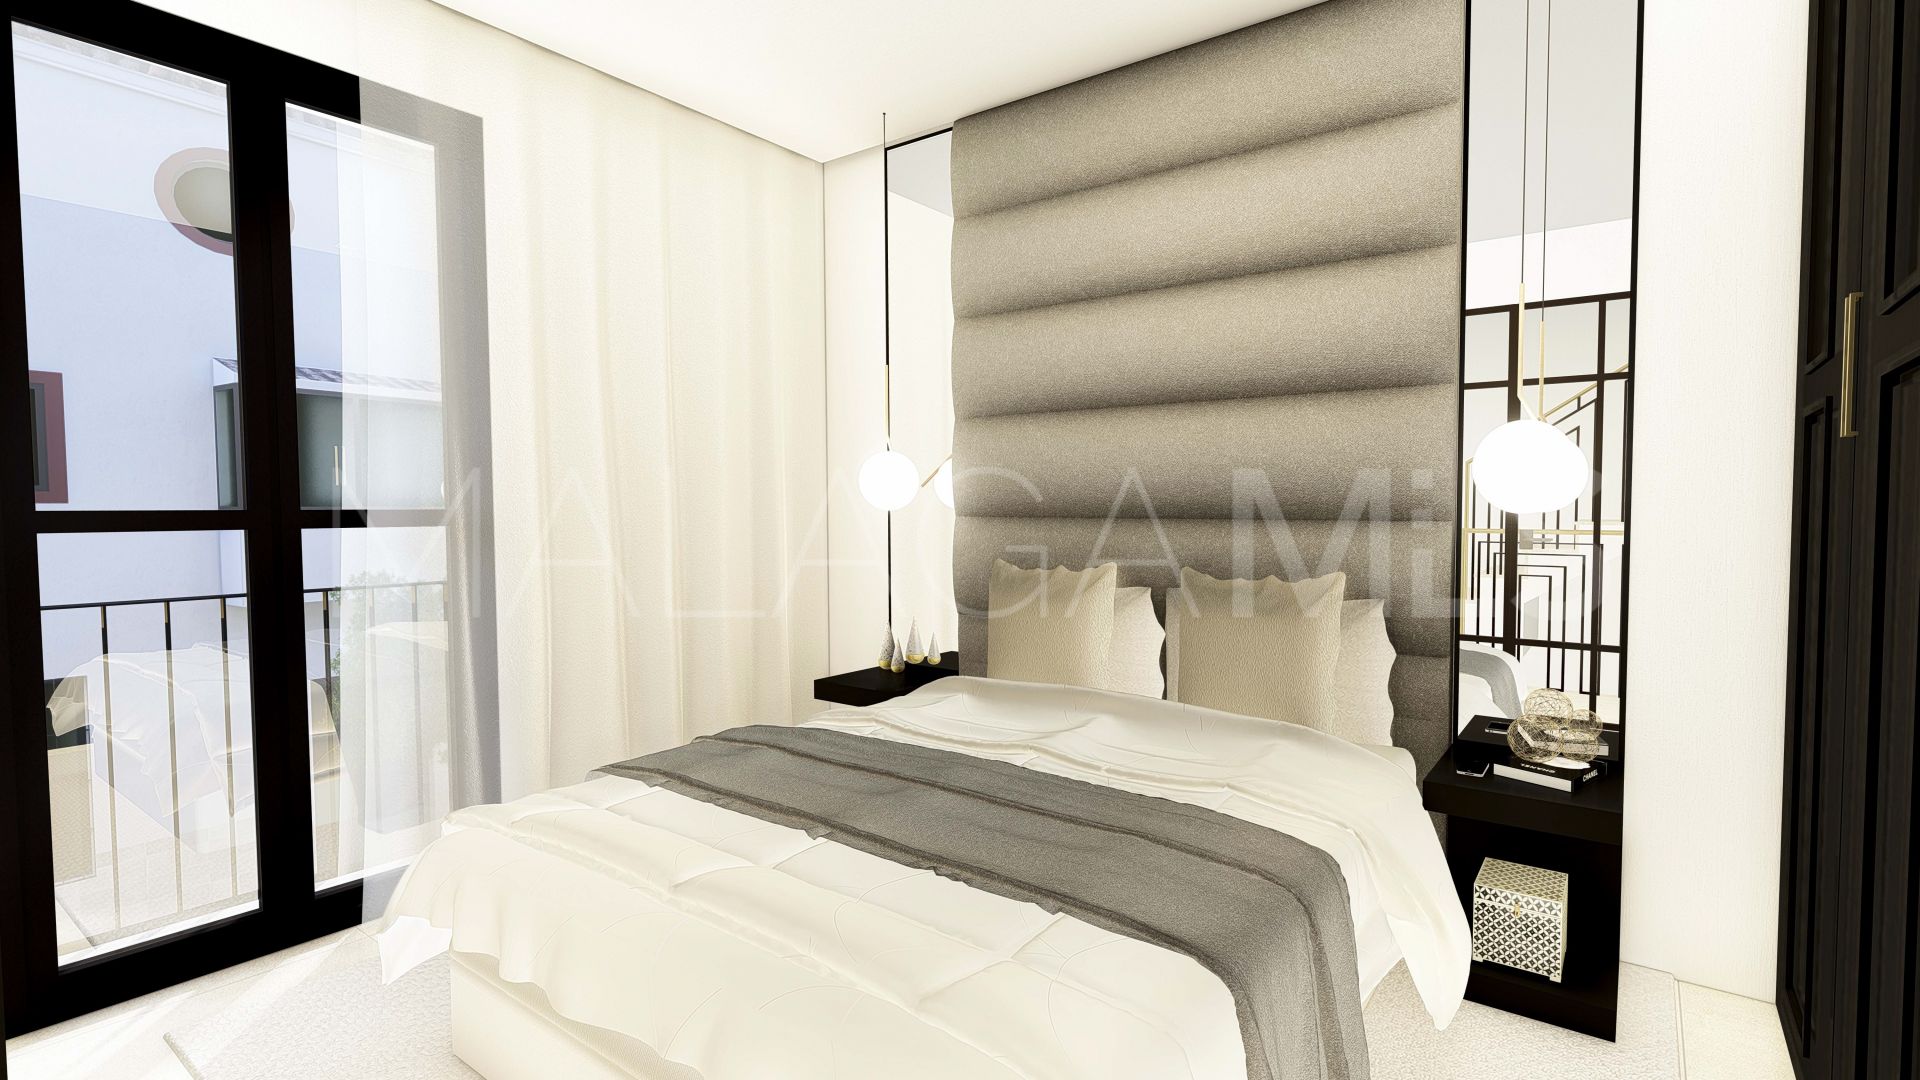 Adosado for sale with 3 bedrooms in Estepona Casco Antiguo